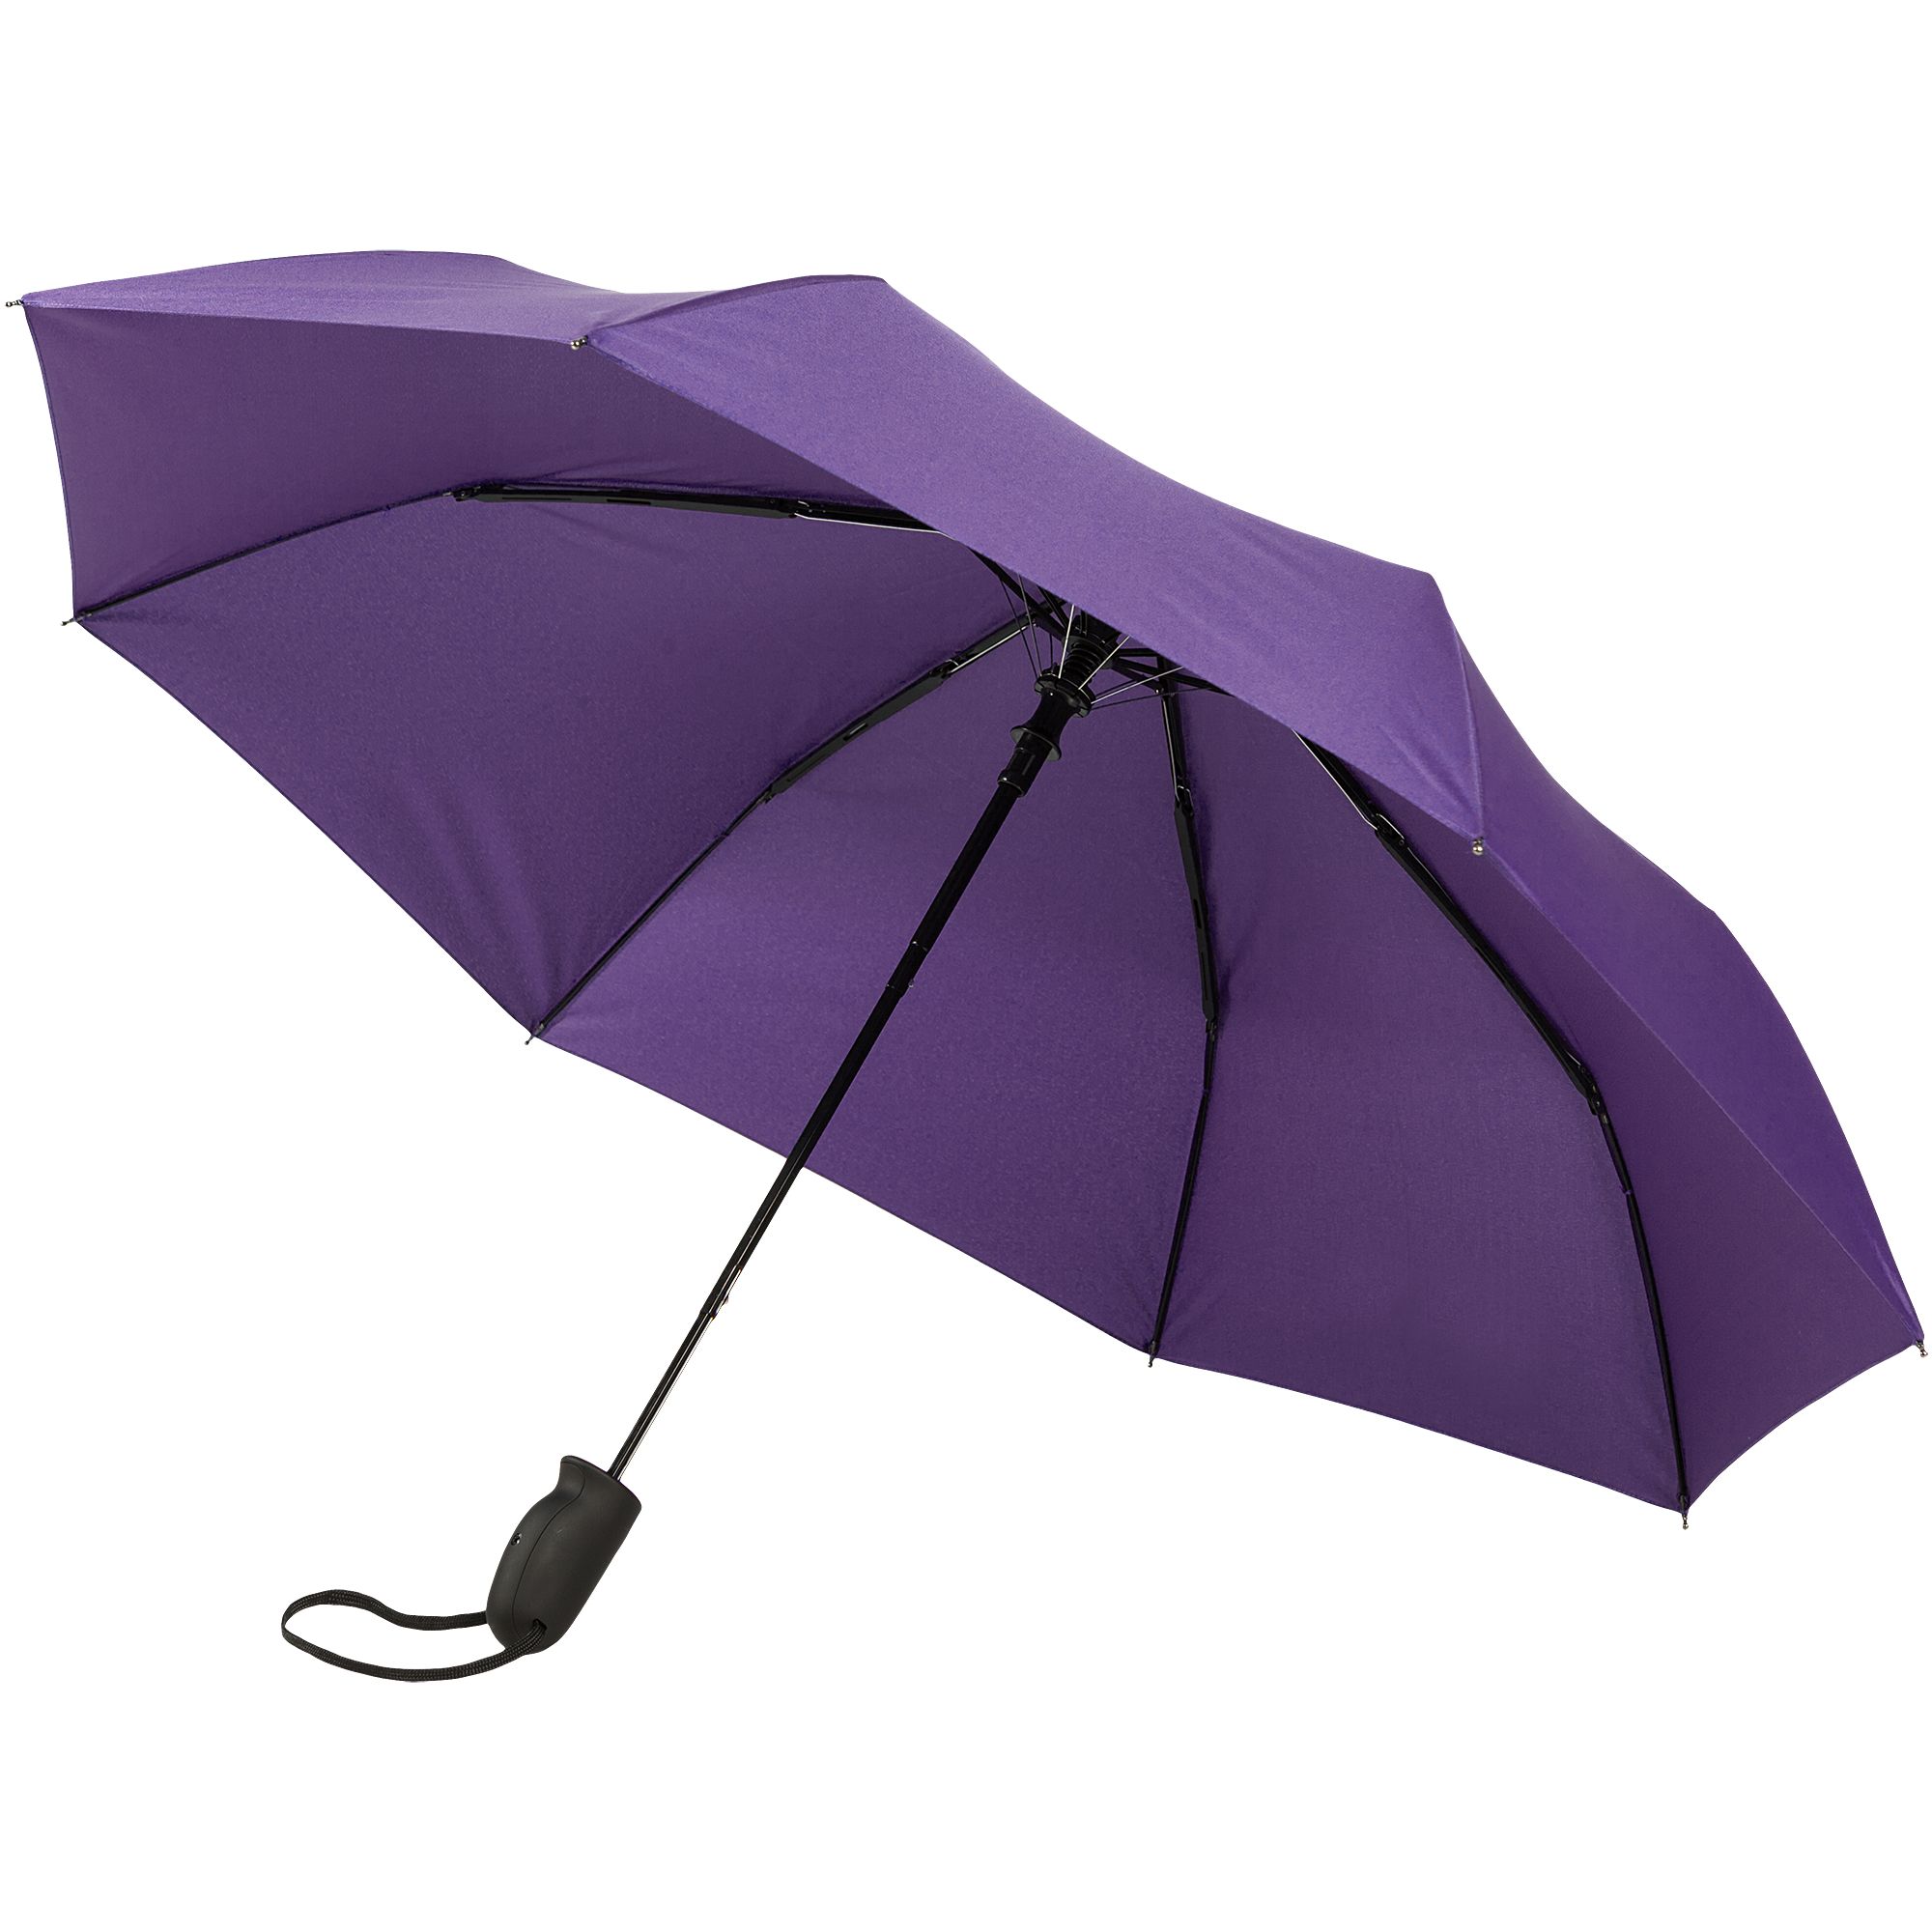 Складной зонт Magic с проявляющимся рисунком - фото